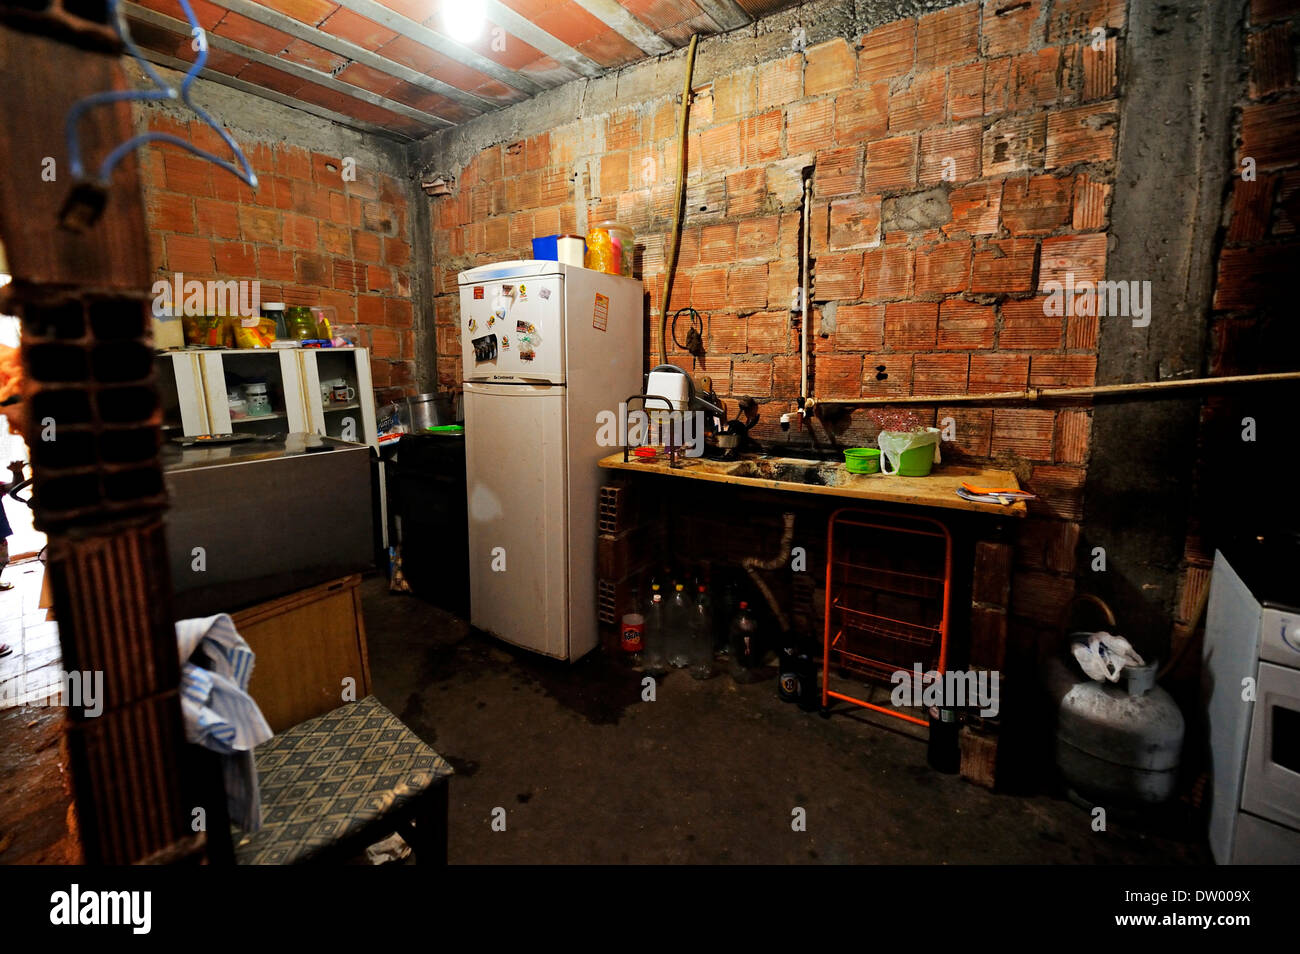 Interior view of a home, kitchen, in the slums, Favela Cerro Corá, Rio de Janeiro, Brazil Stock Photo